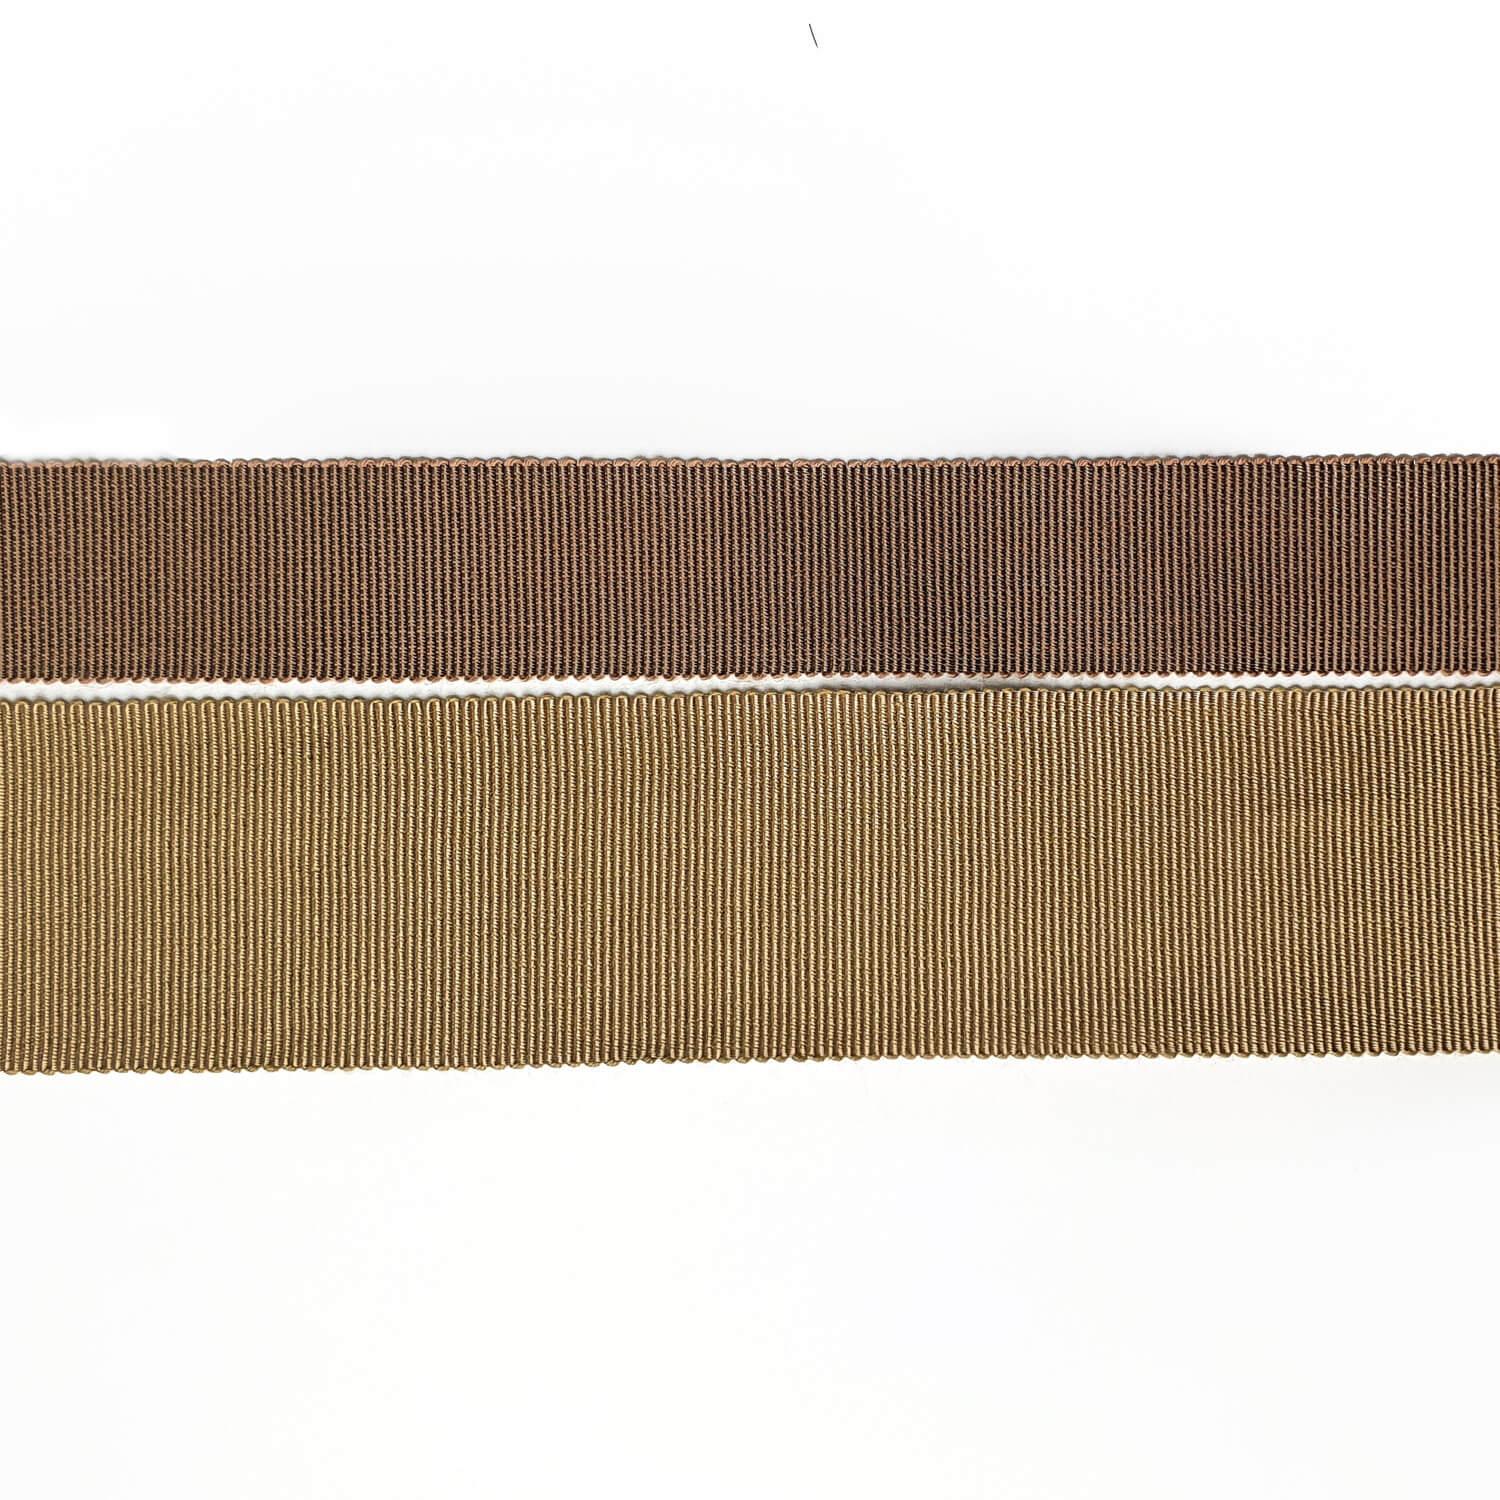 Репсовая лента в ассортименте  Ширина: 1.5-5 см  + цвета, цвет Бежевый, фото 2